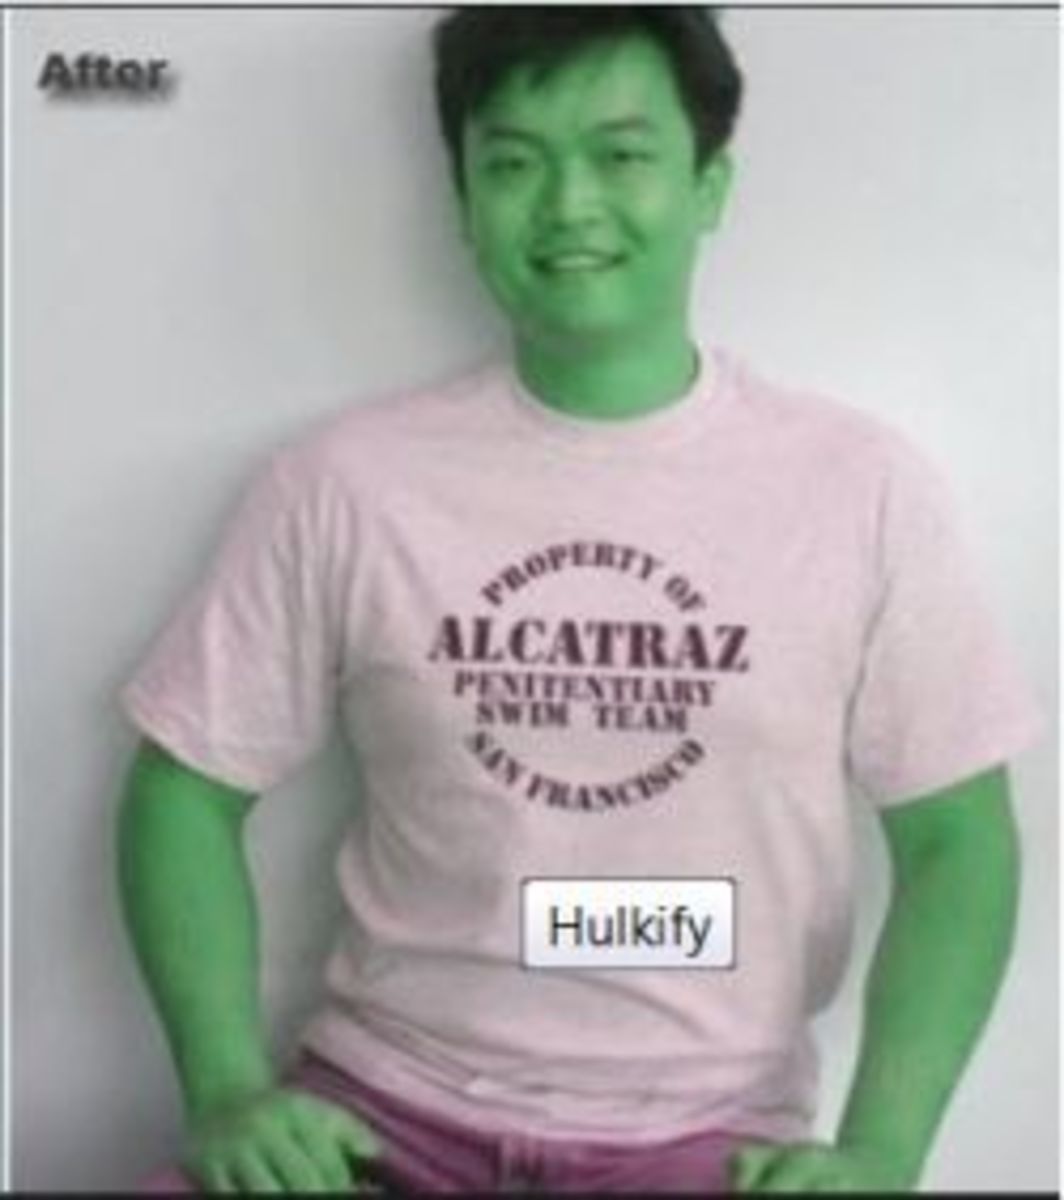 Hulkify